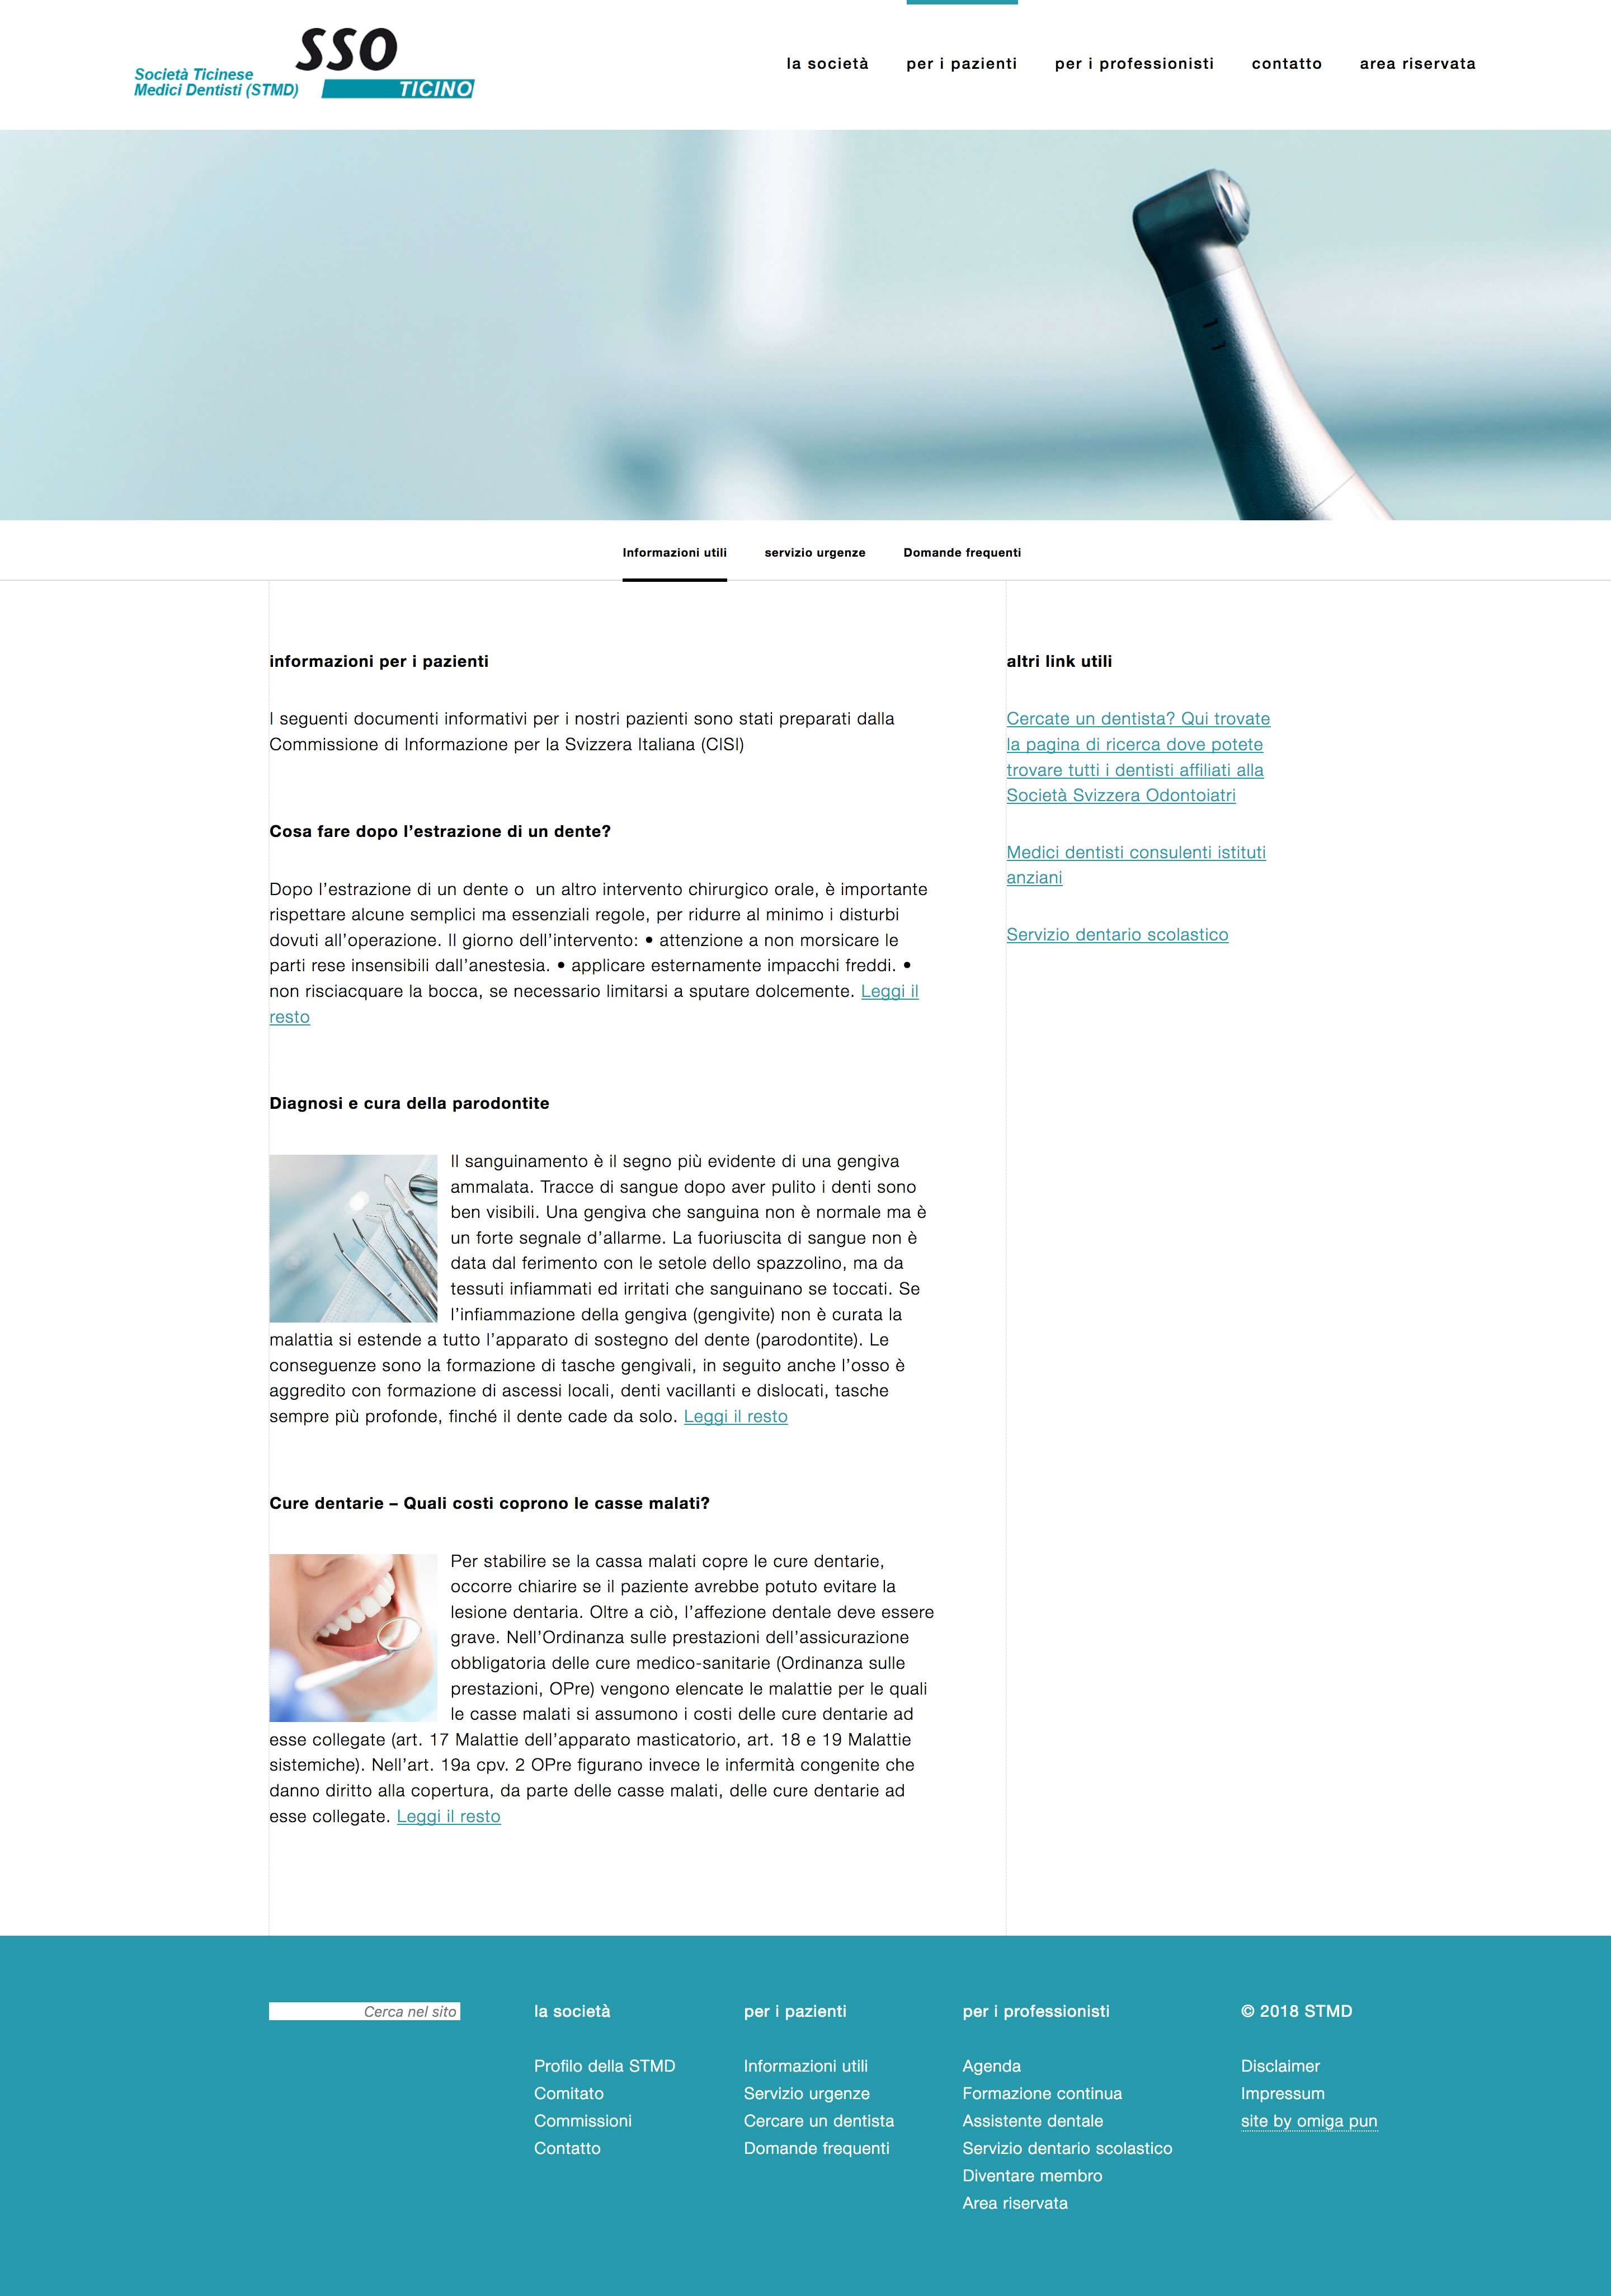 Screenshot of website designed for SSO-Ticino